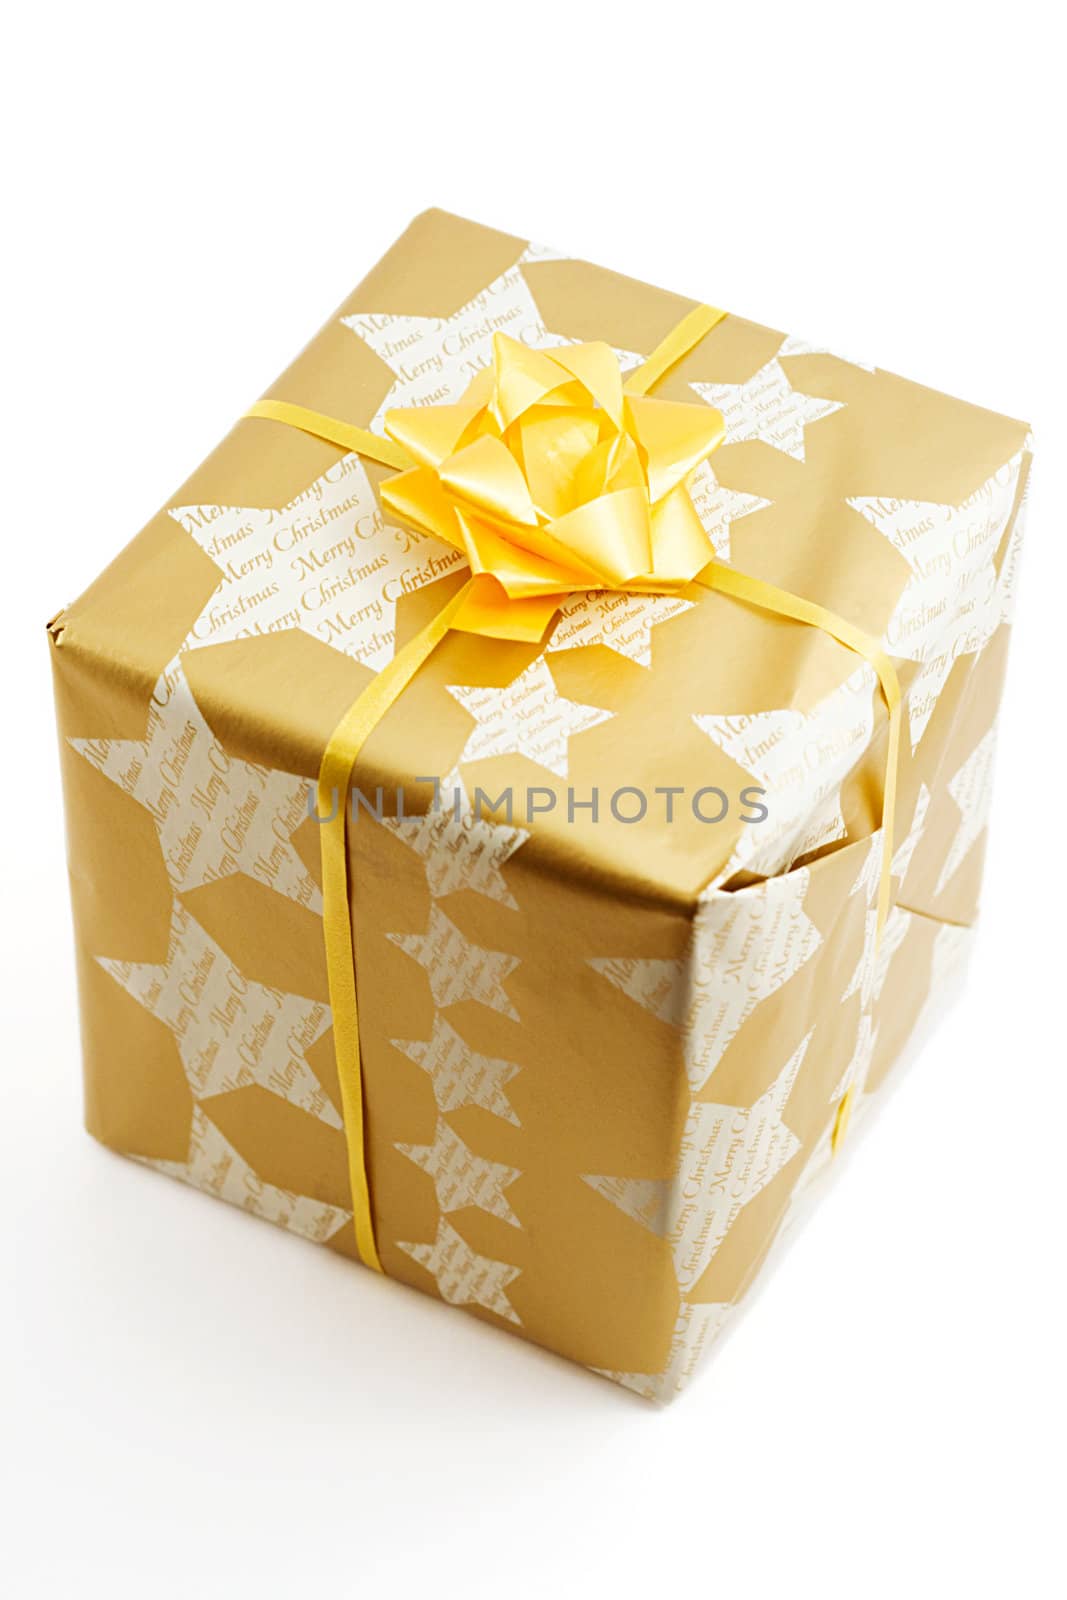 golden gift box, shot on white